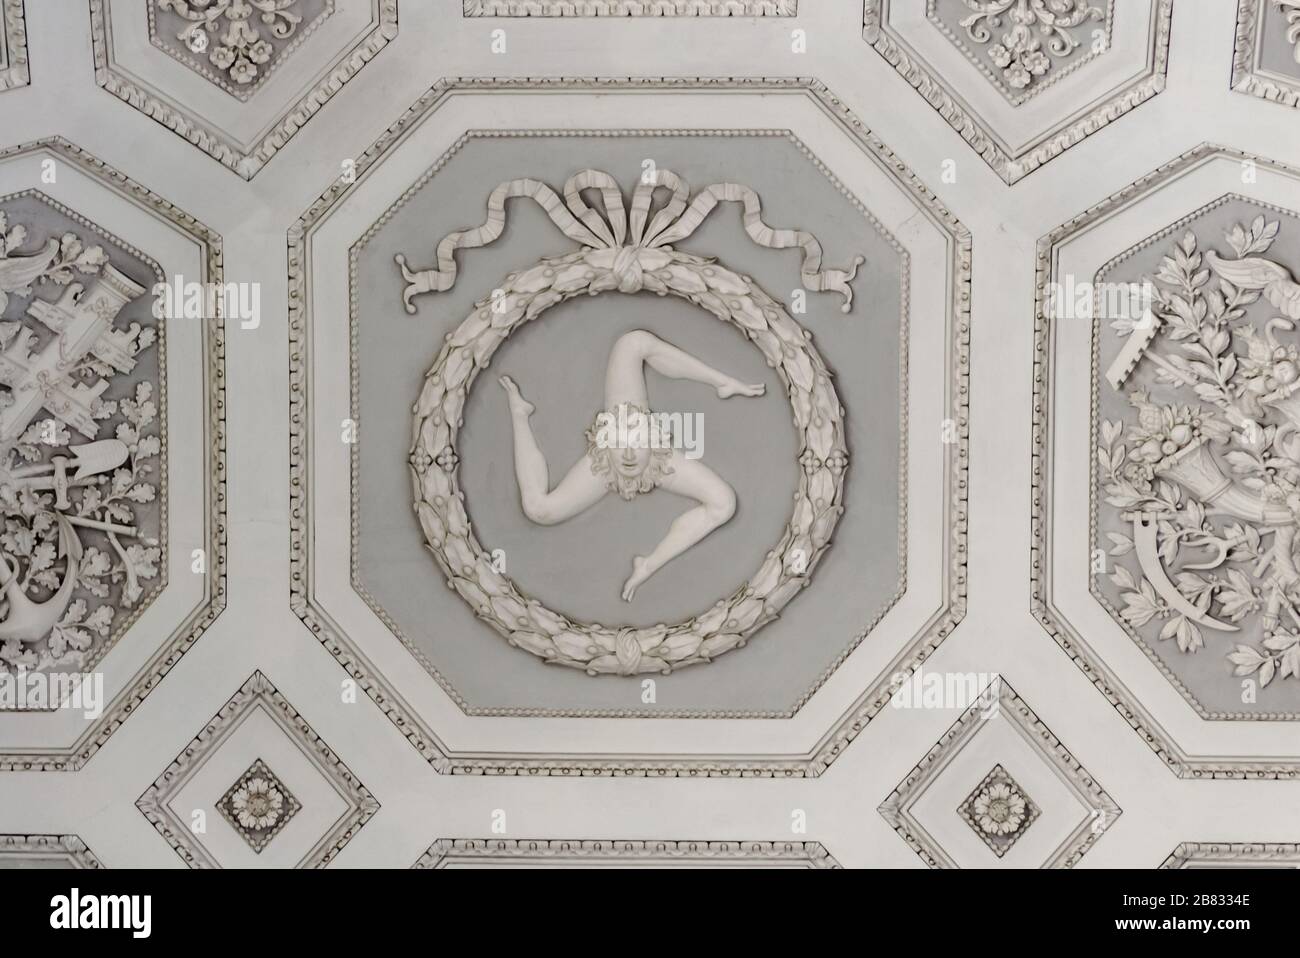 Palais Royal de Naples, Italie, septembre 2017. Détail de la deration du plafond, ici le symbole de la Sicile autrefois partie du règne de Naples Banque D'Images